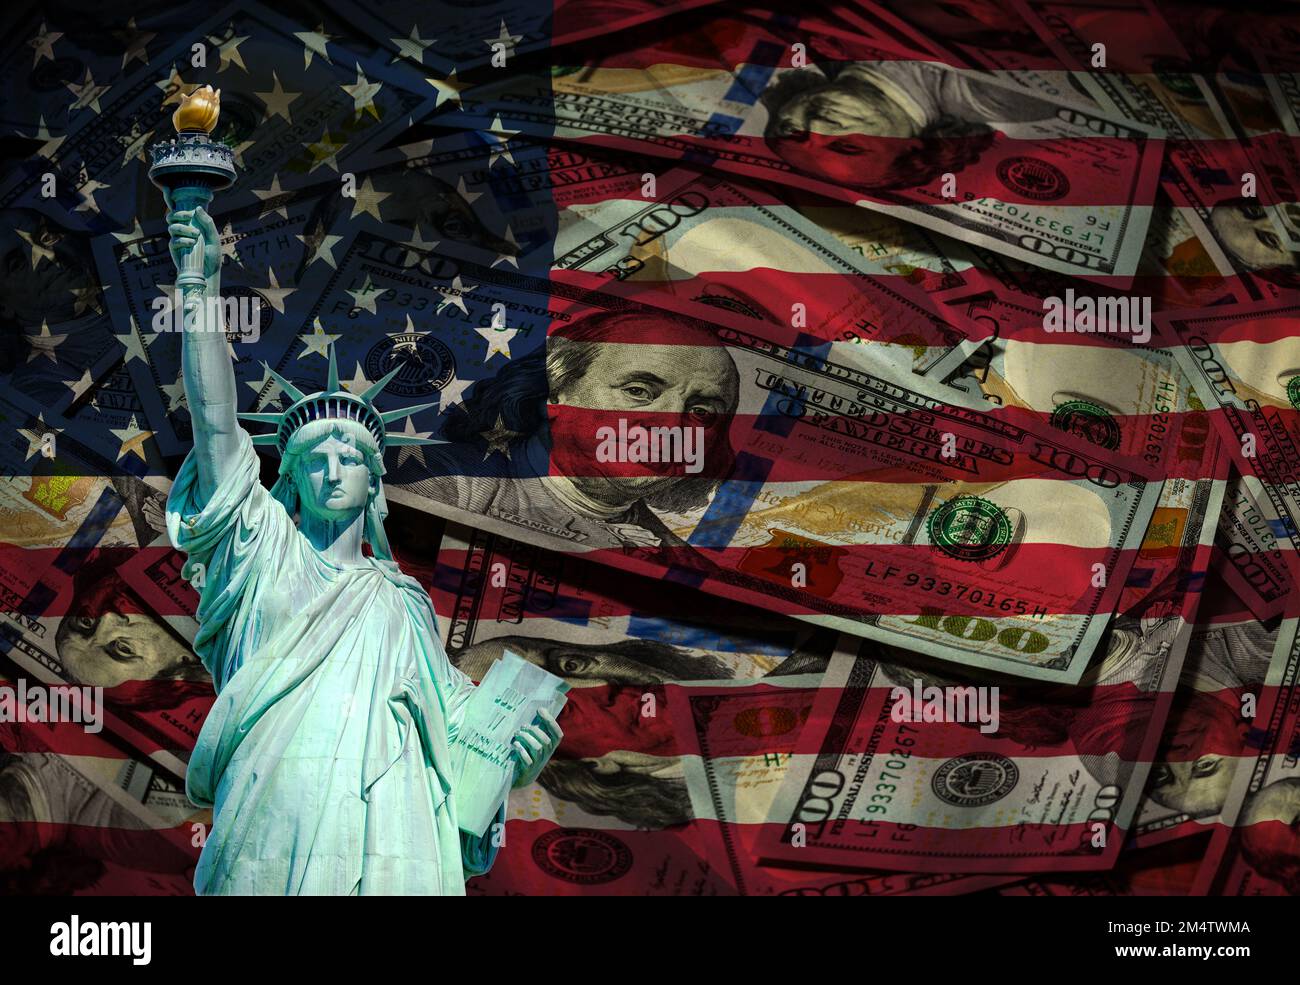 Économie américaine. Financier. Portrait de Franklin à côté de la statue de la liberté. La statue de la liberté est peinte dans les couleurs du drapeau américain. Système fédéral de réserve Banque D'Images